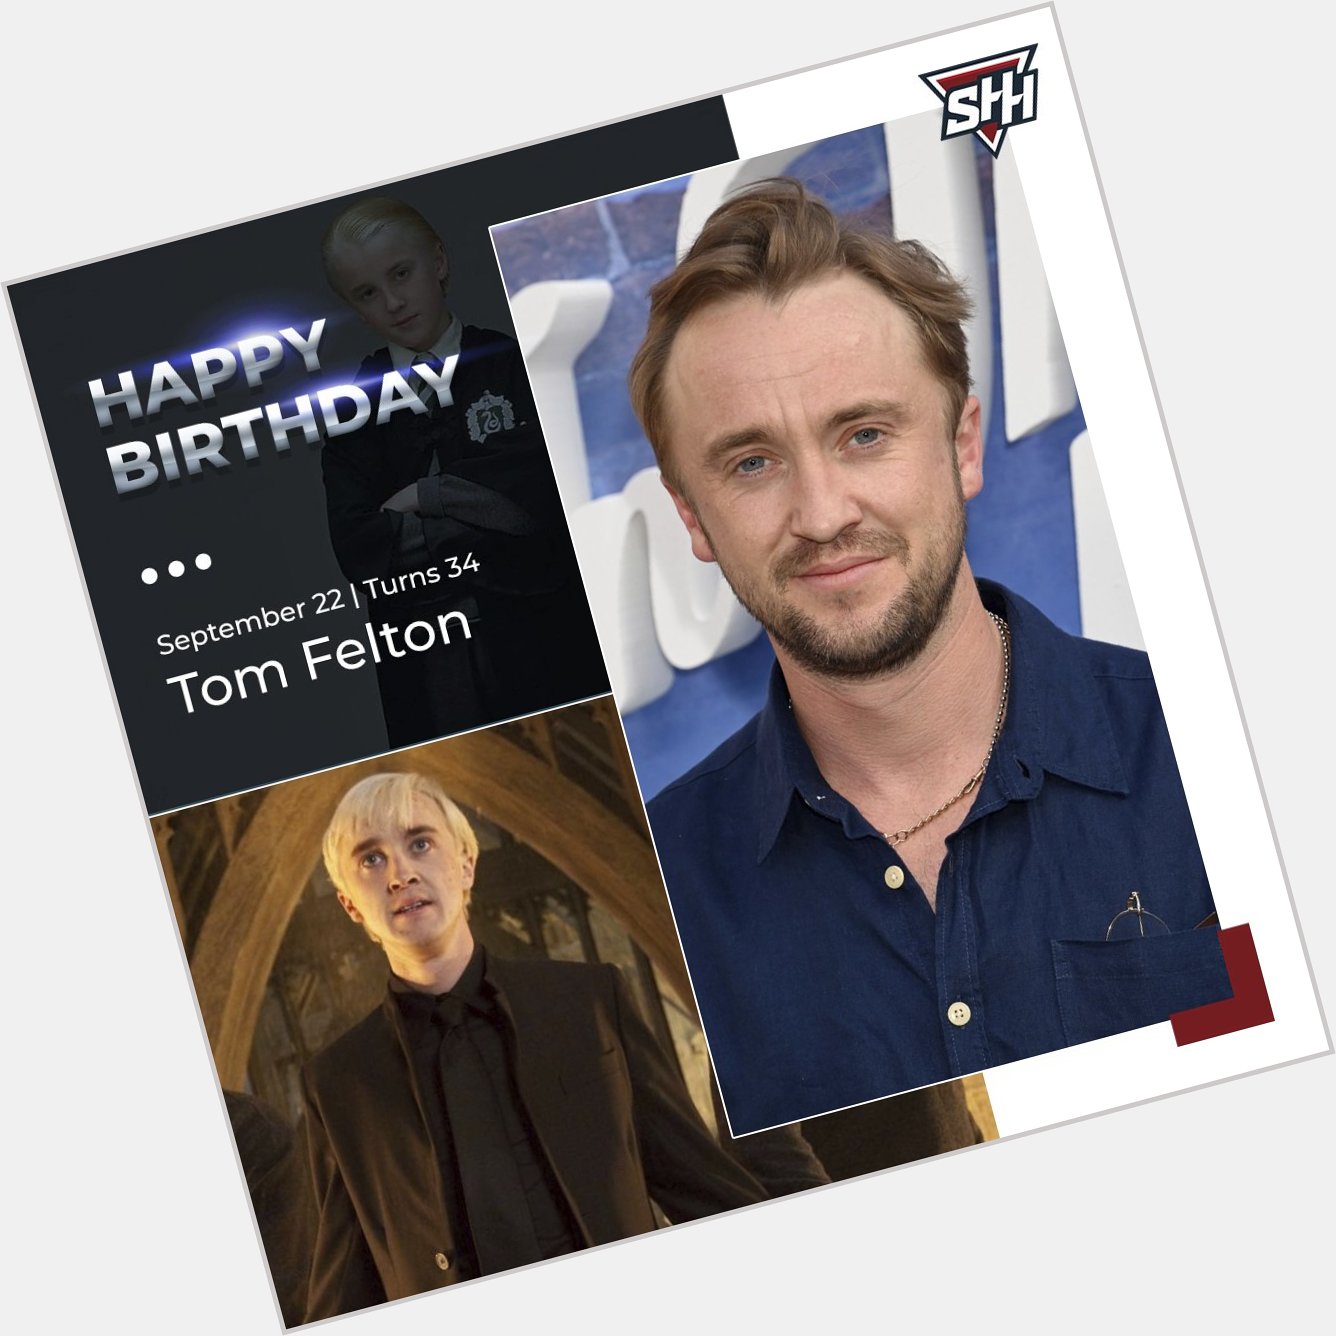 Happy Birthday to Tom Felton! 